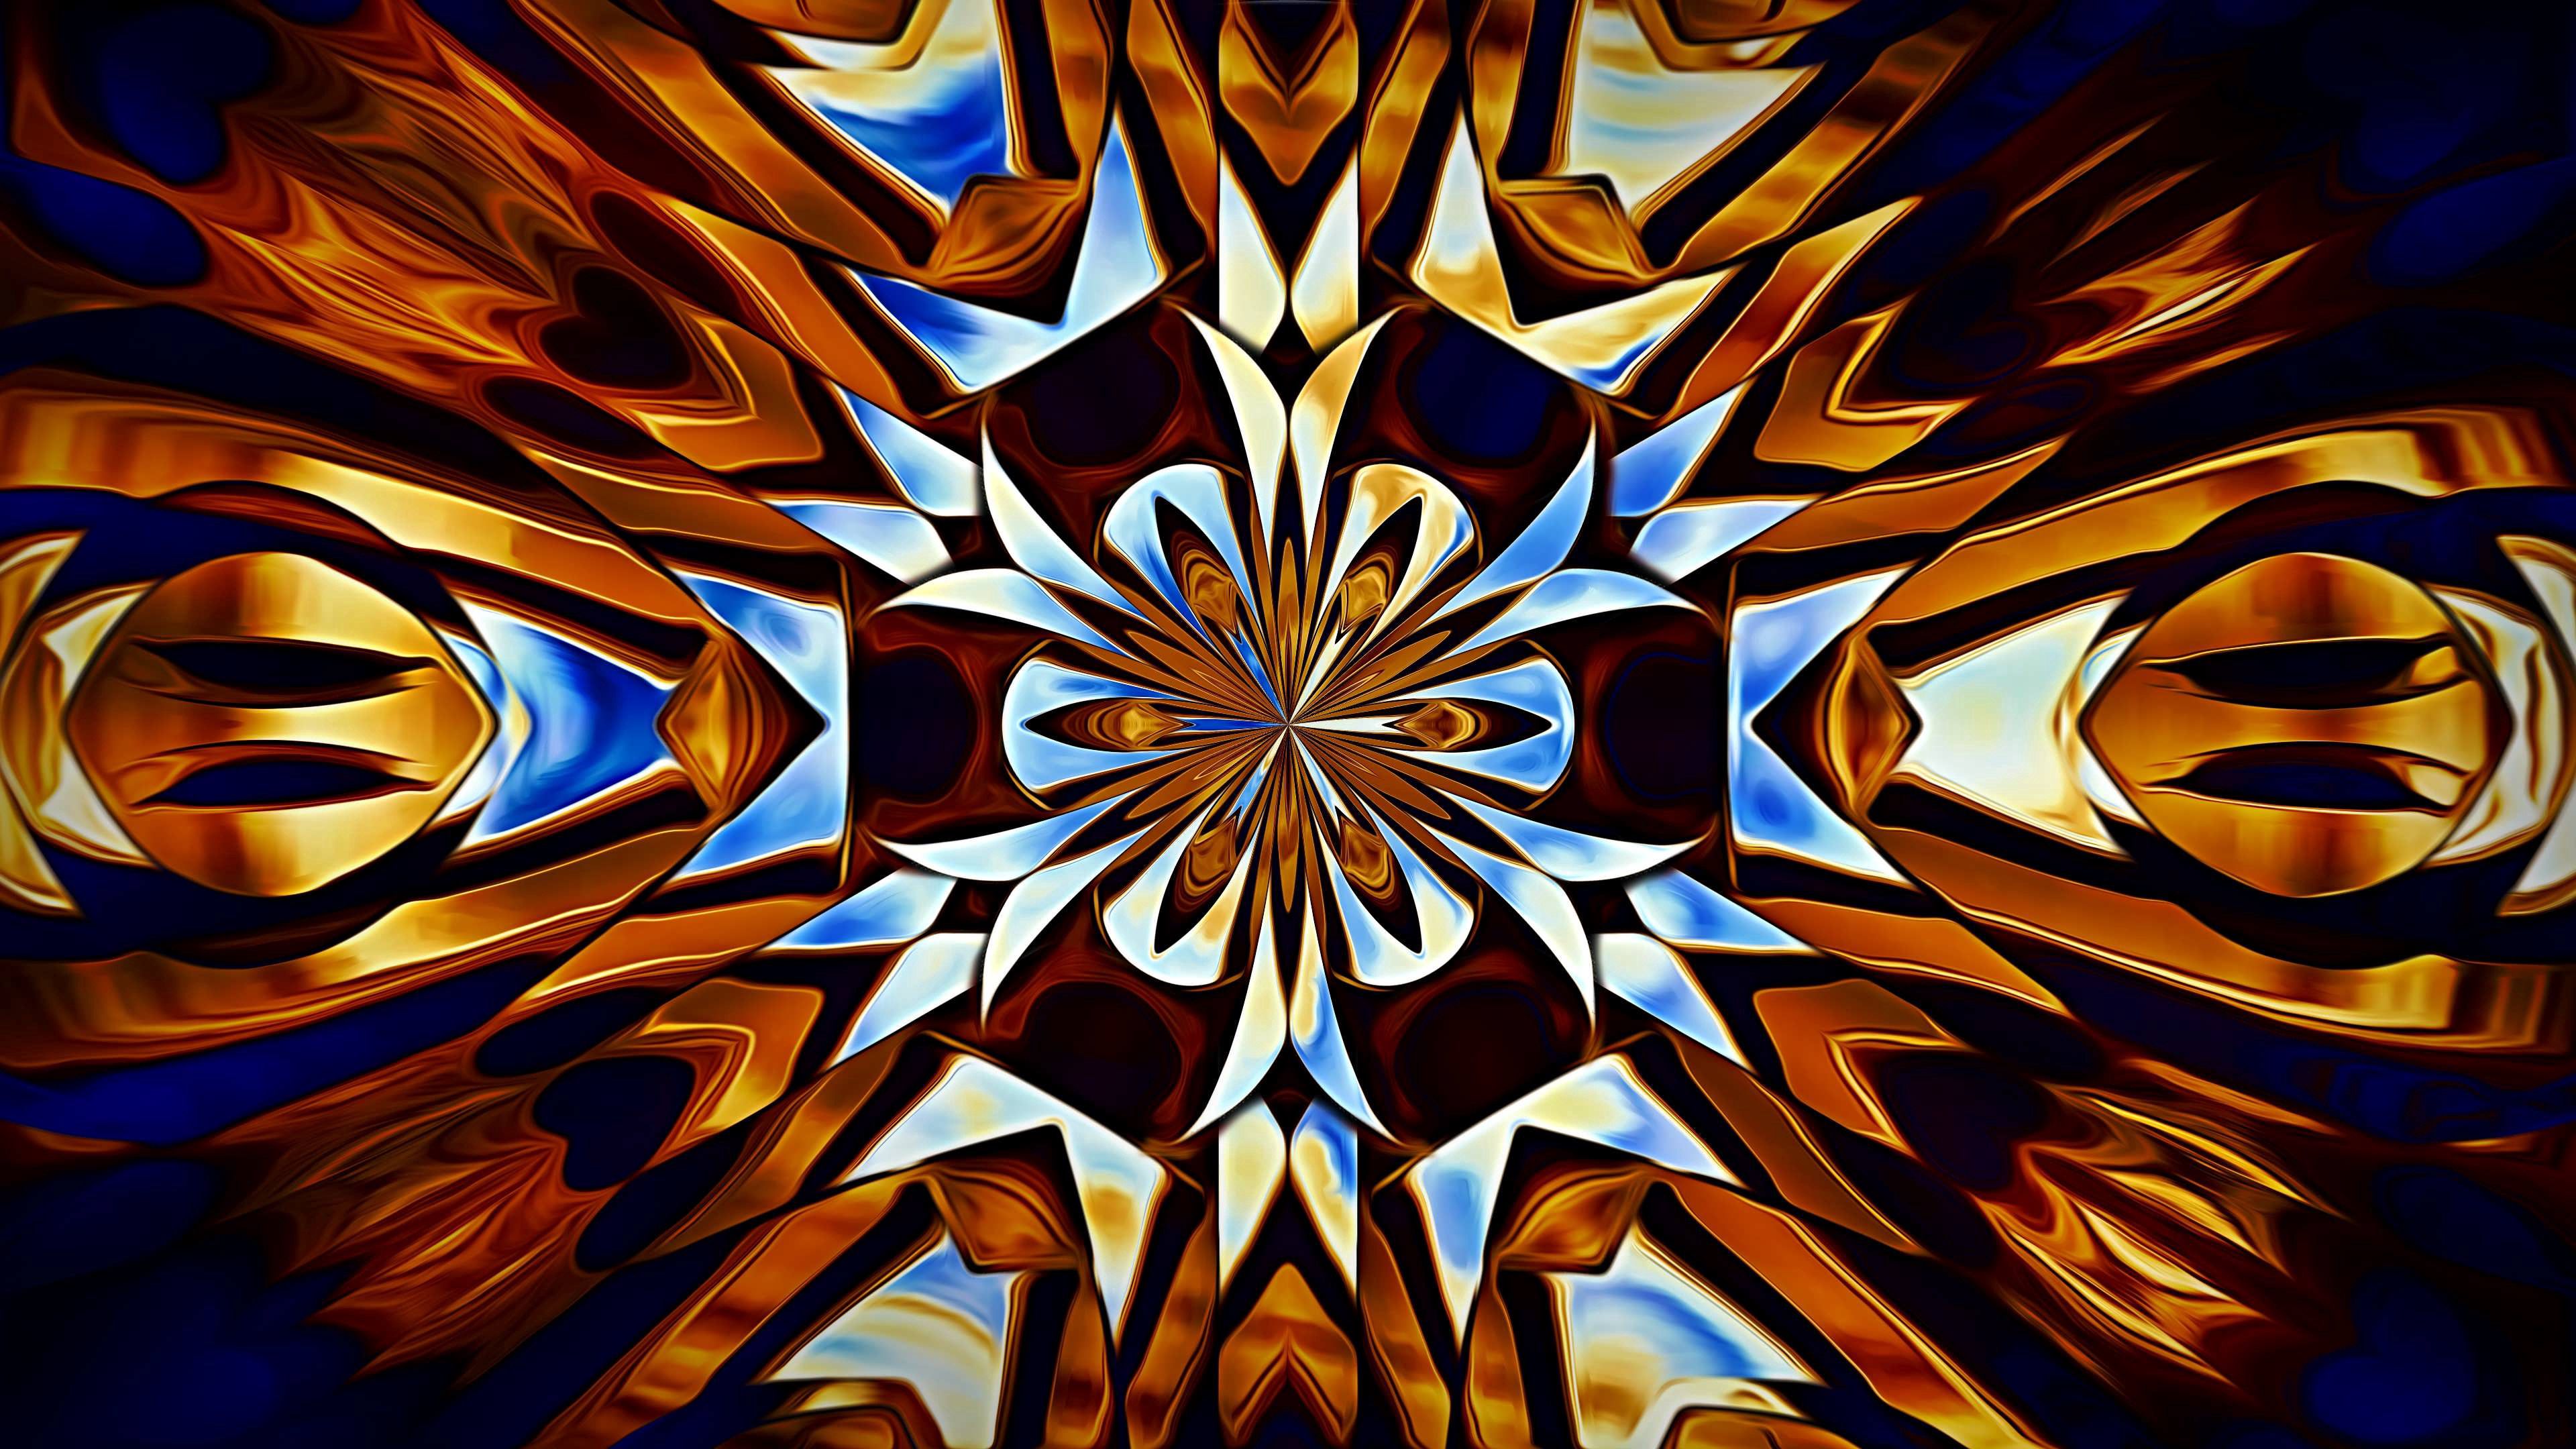 kaleidoscope, abstract, pattern, fractal, symmetry Full HD